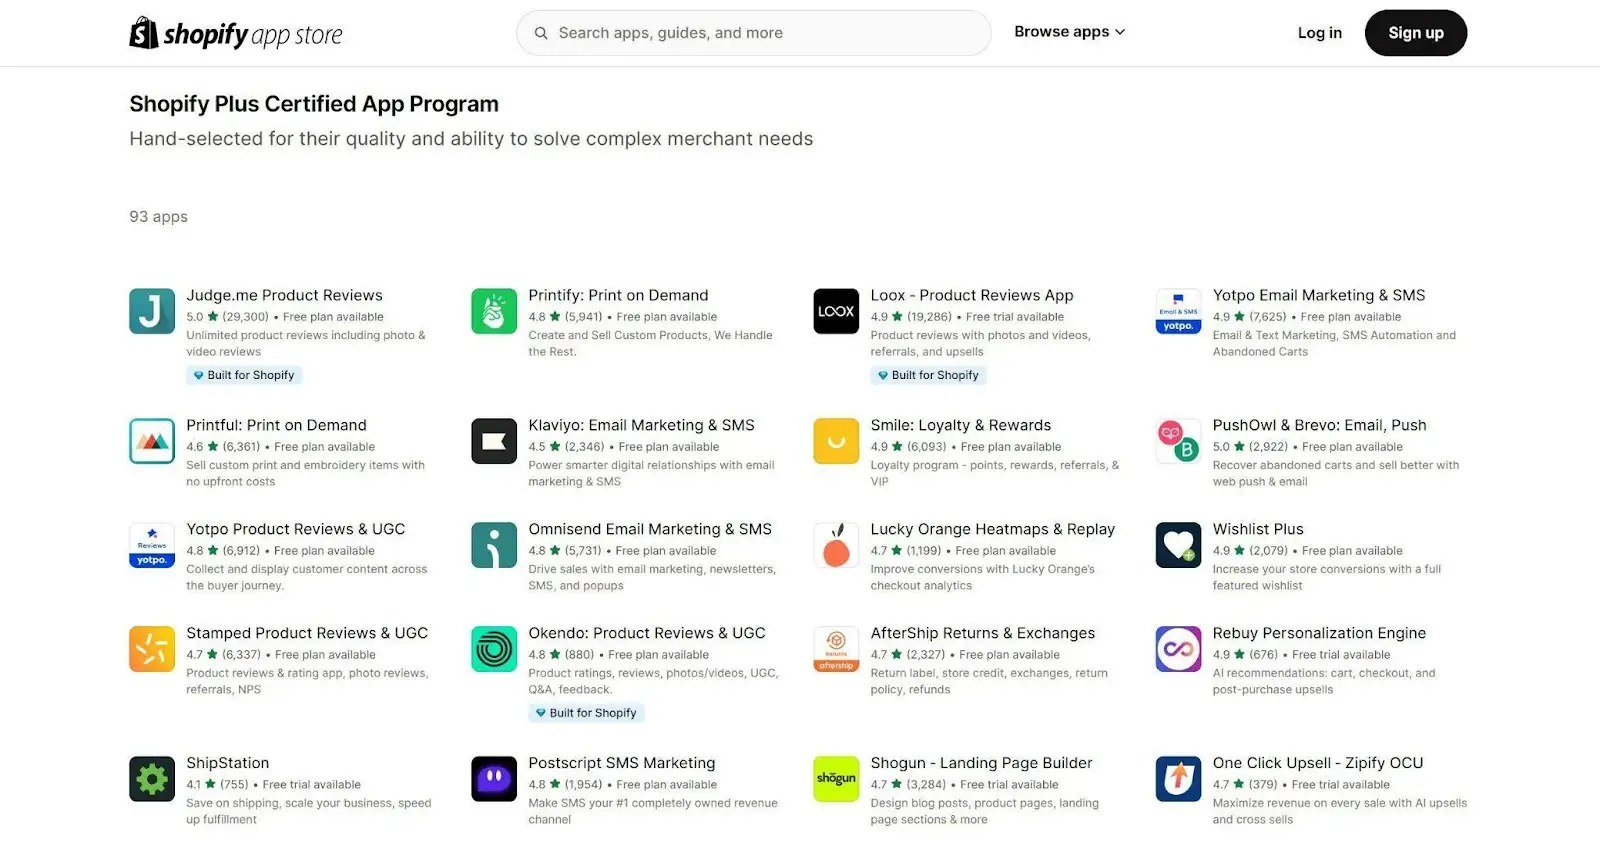 Shopify Plus Certified App Program